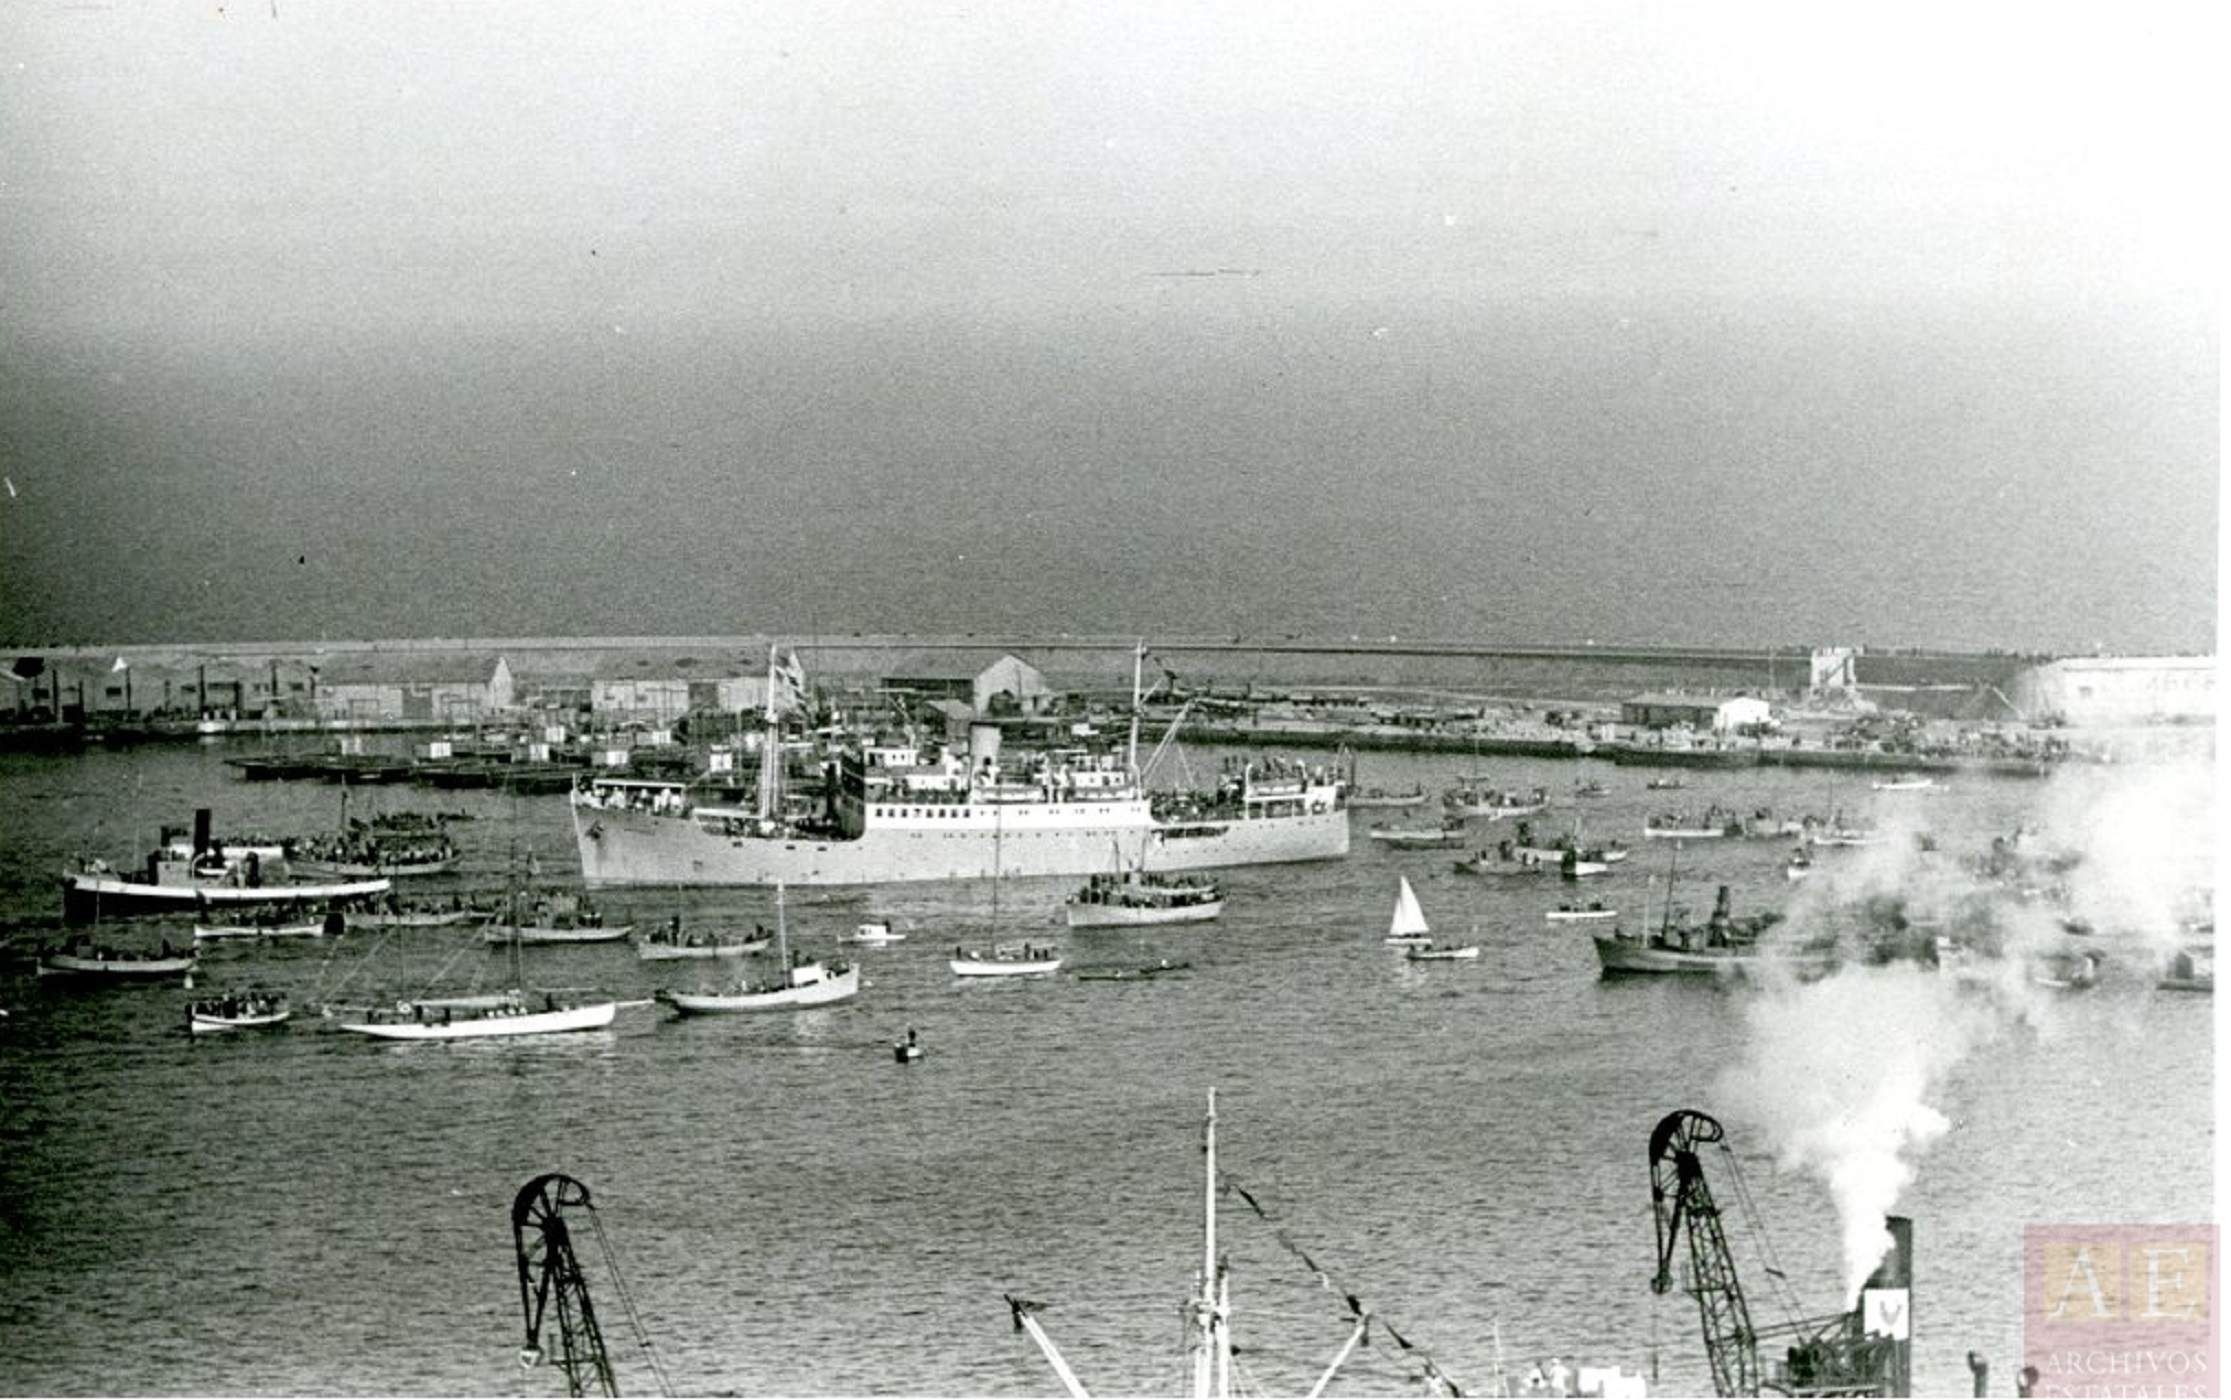 El vaisell Serimiades entrant al port de Barcelona. Font Archivos Estatales